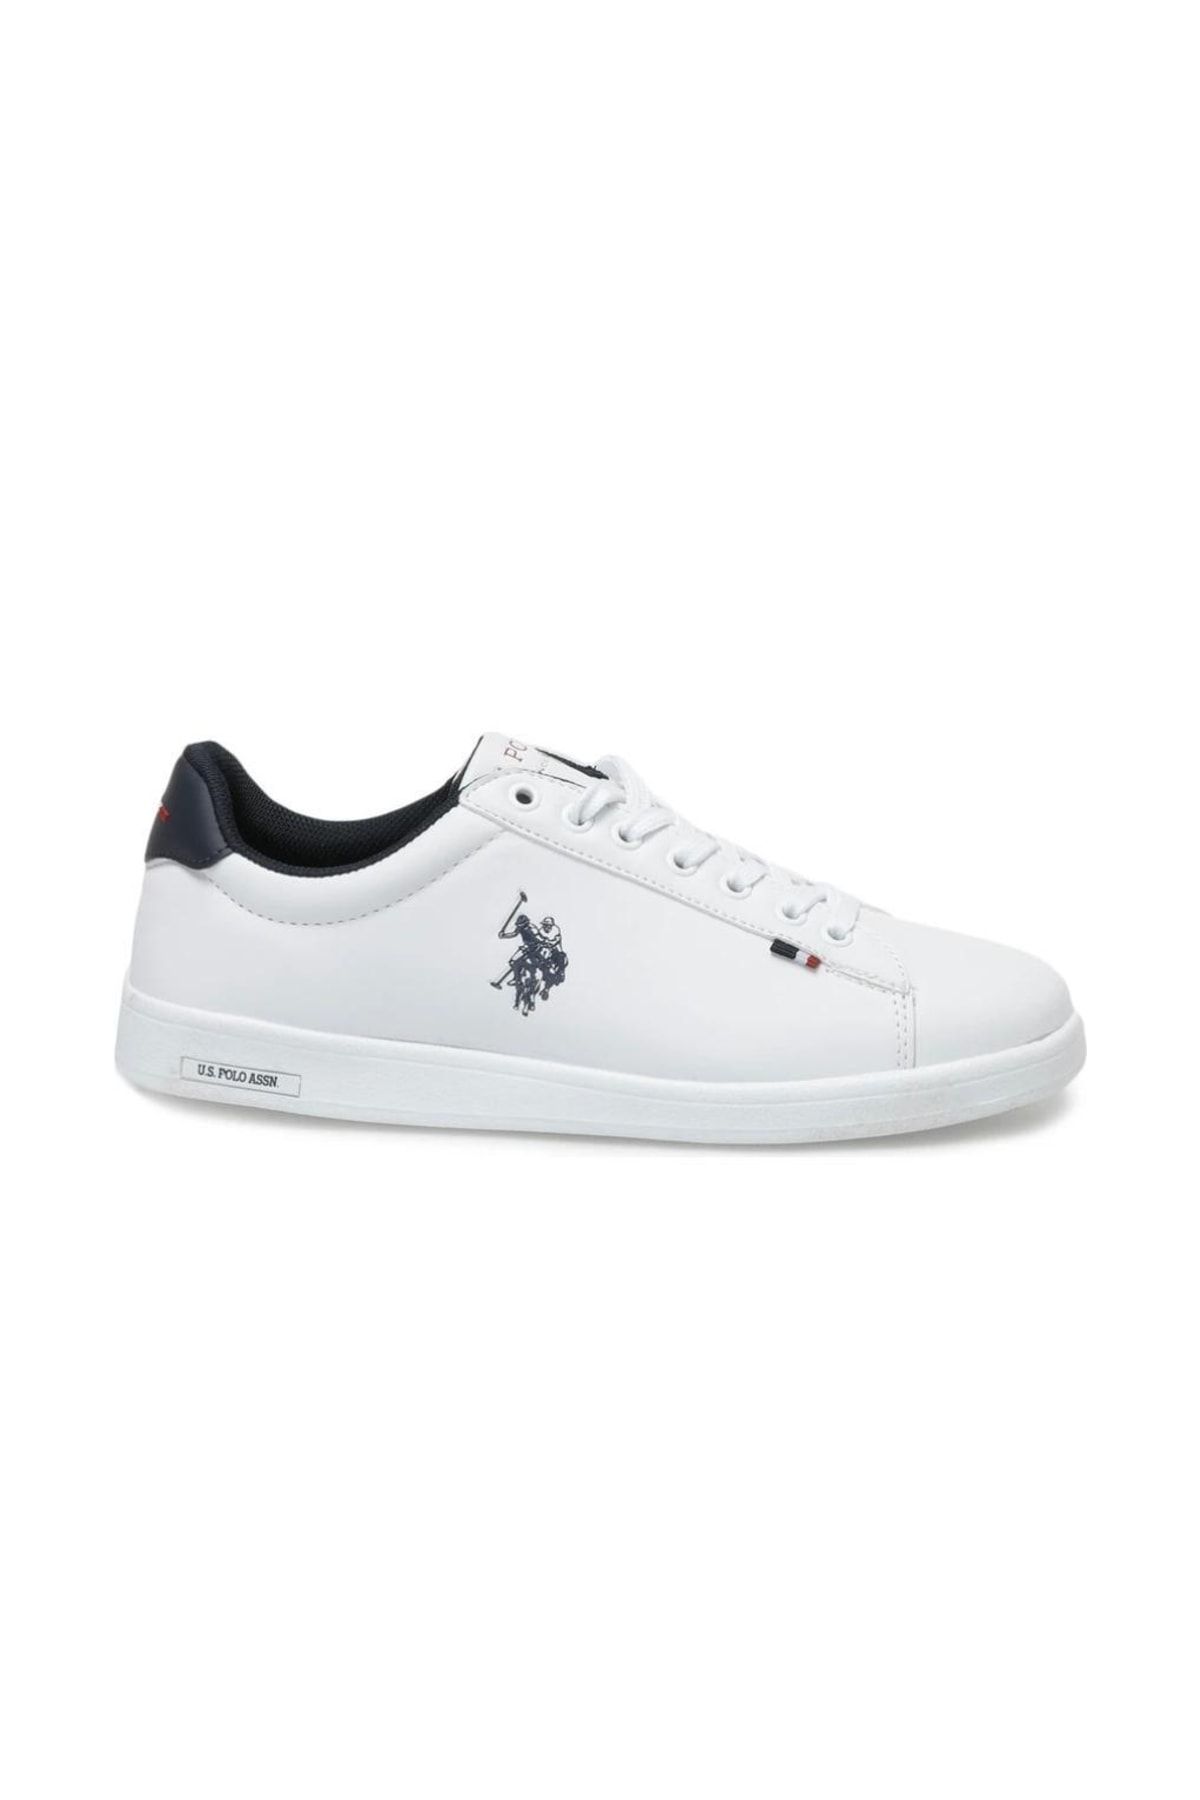 U.S. Polo Assn. Uspa Franco 2pr Beyaz Cilt Erkek Sneaker Model Spor Ayakkabı 40-45